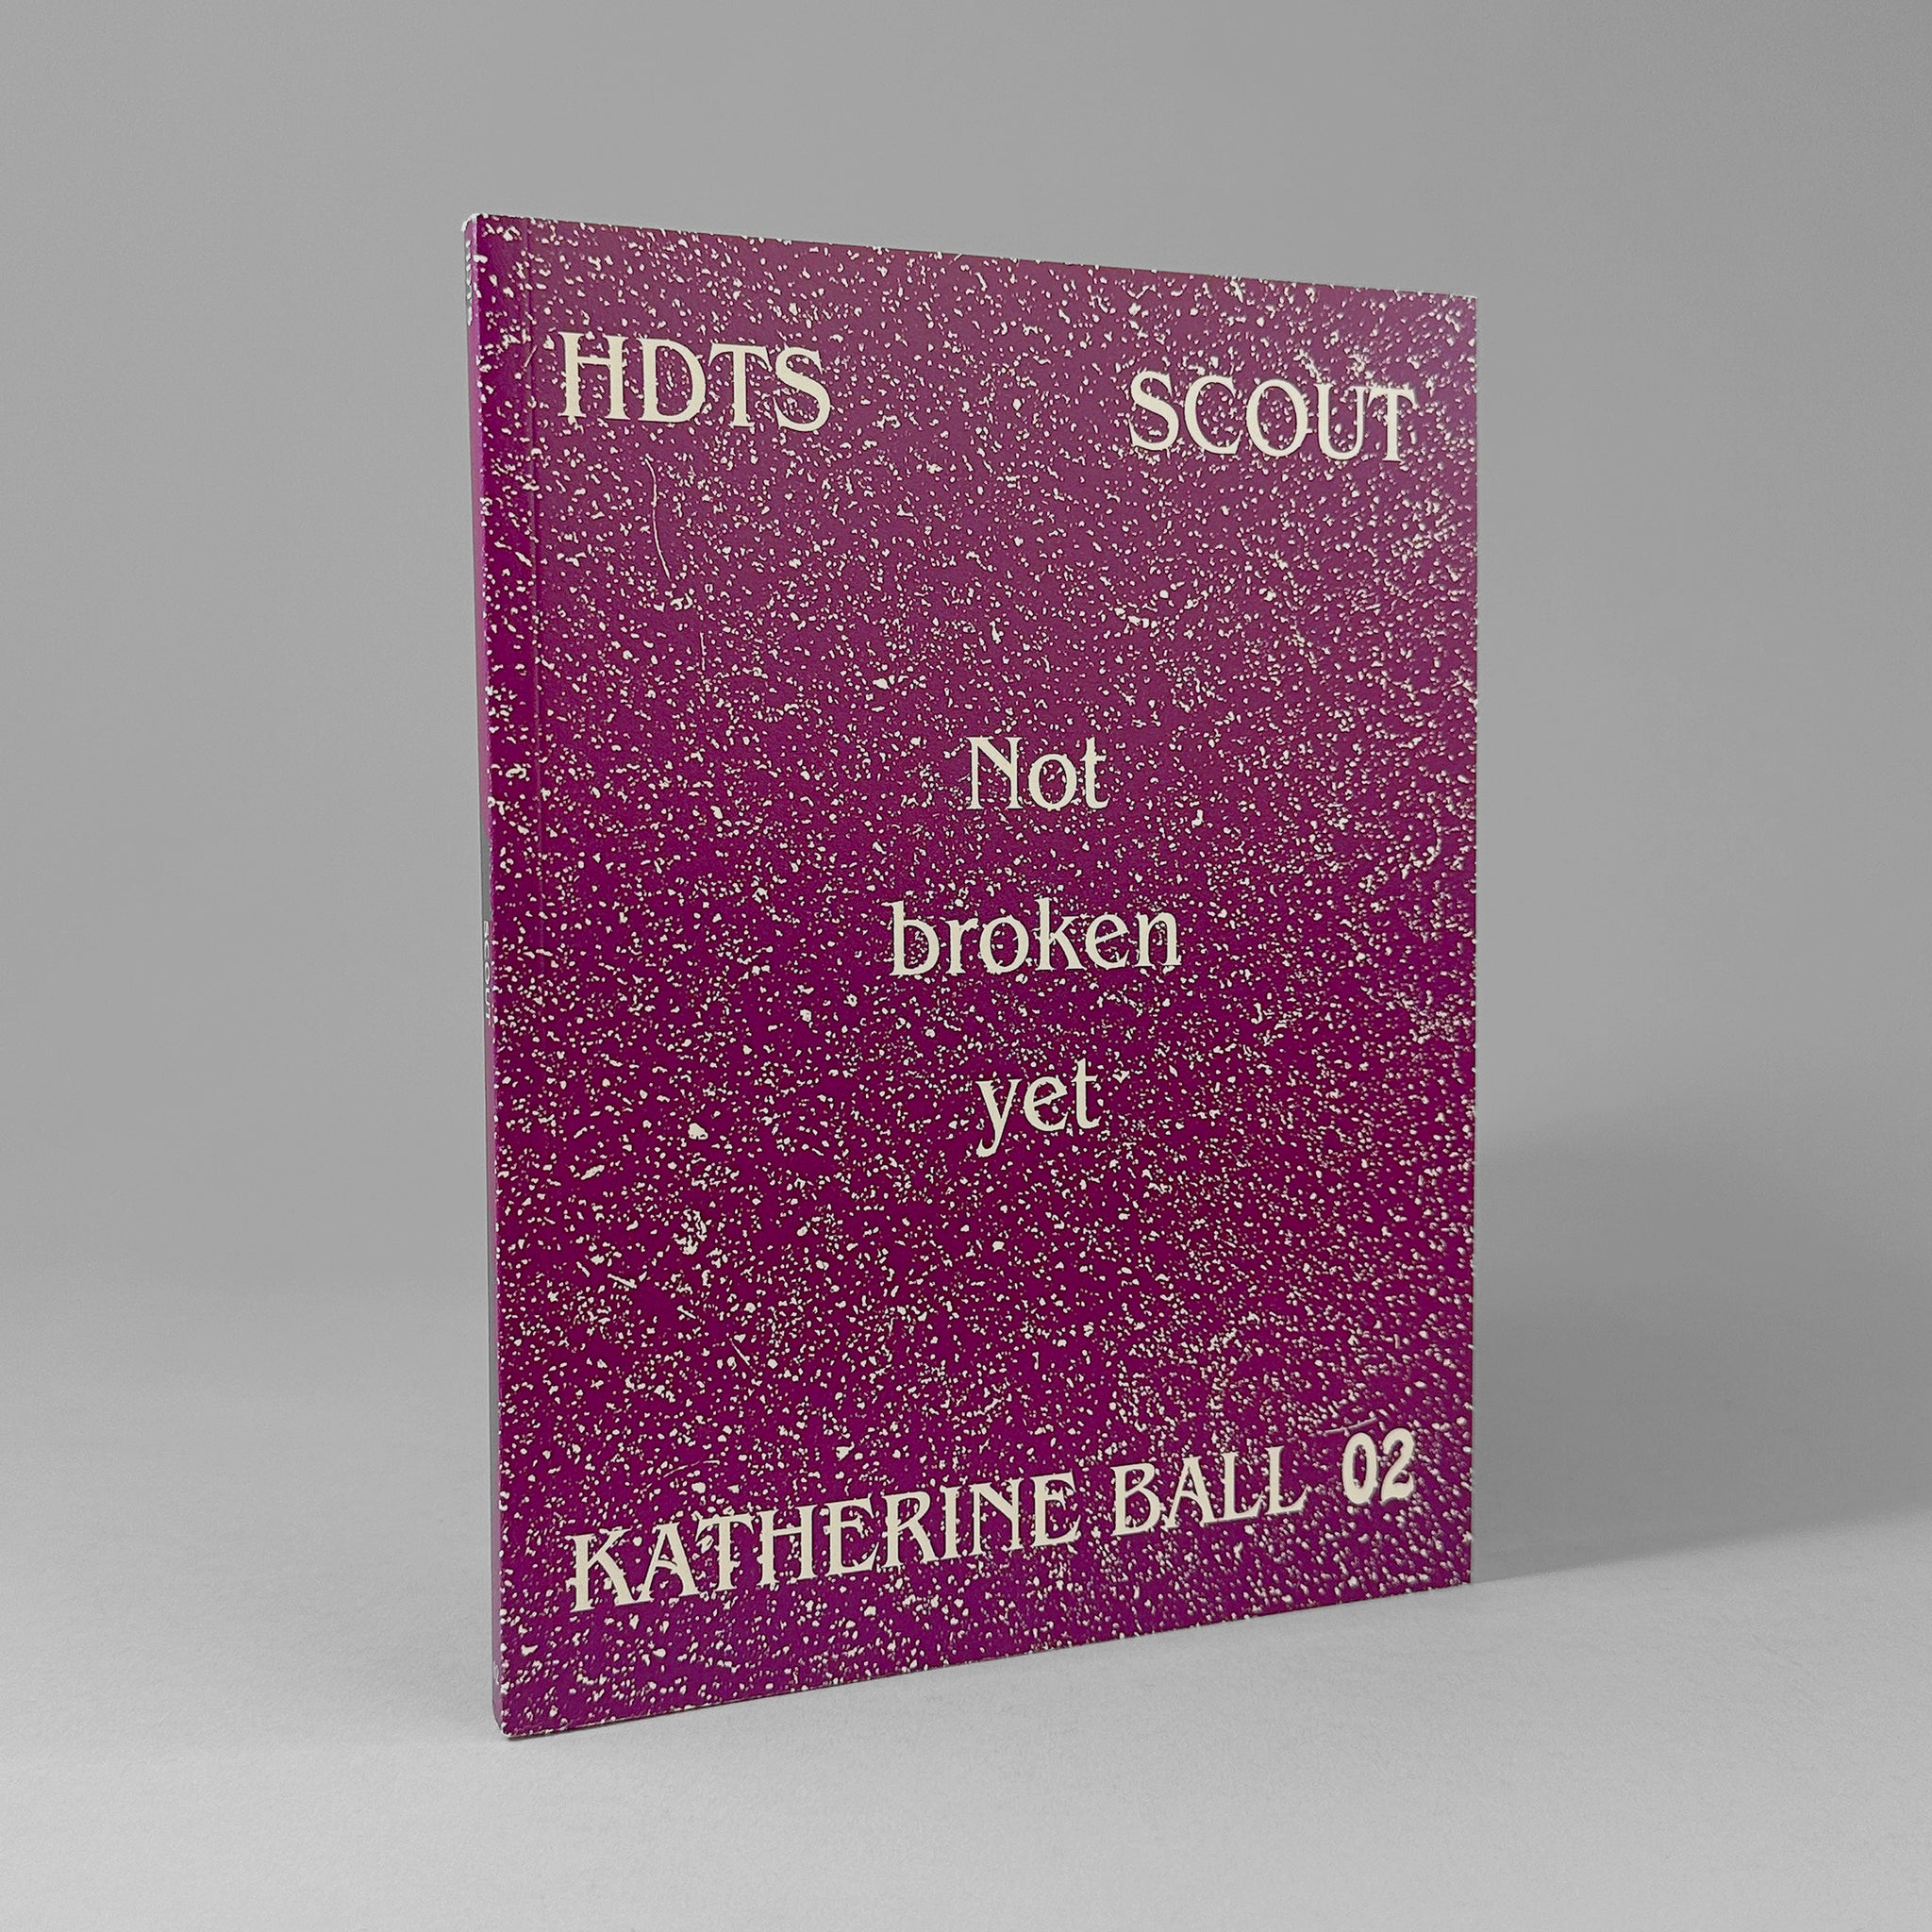 Not broken yet (High Desert Test Sites 02) / Katherine Ball